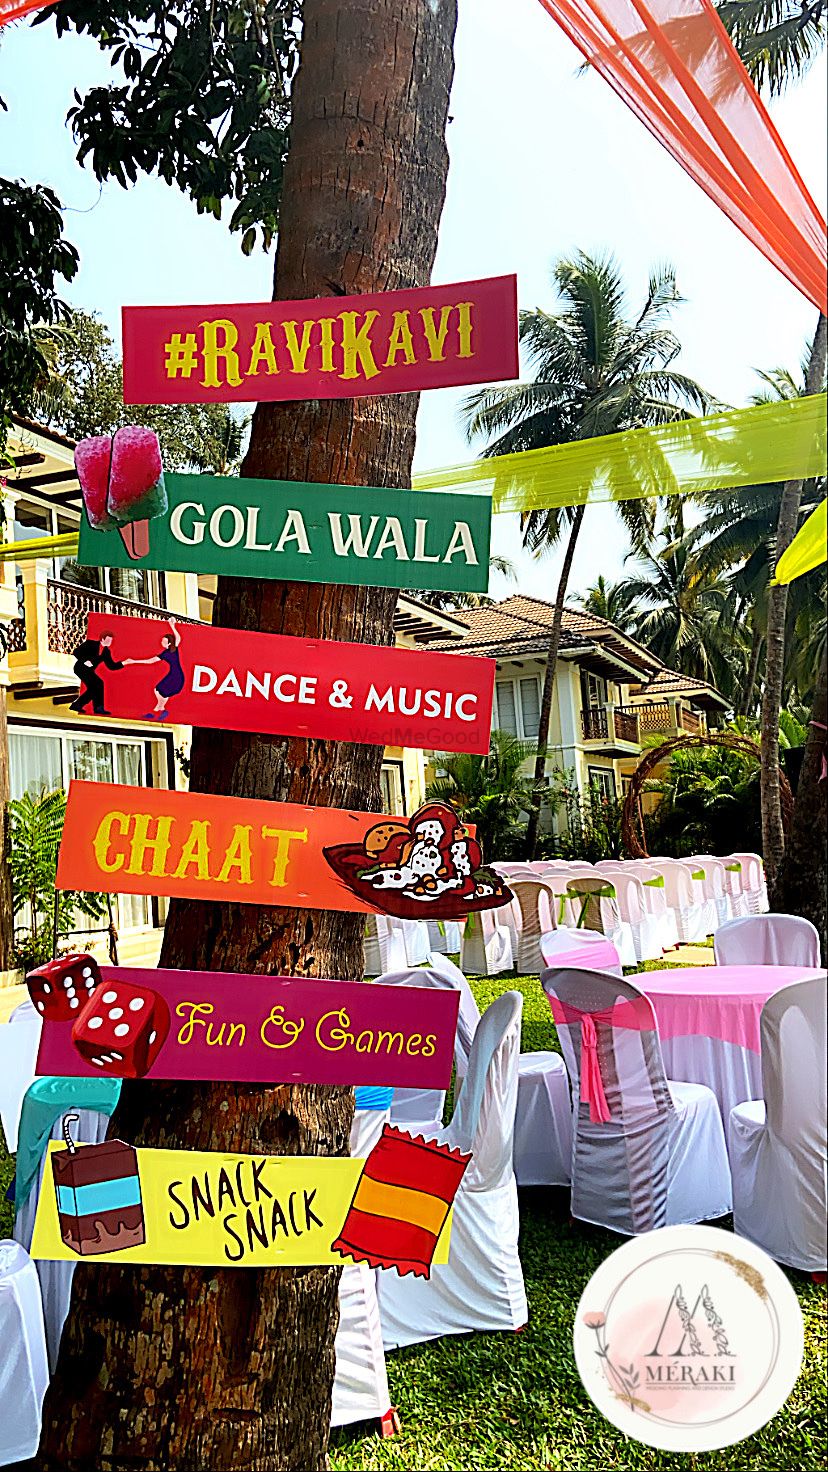 Photo From Ravikavi Engagement Party - By Meraki Weddings India